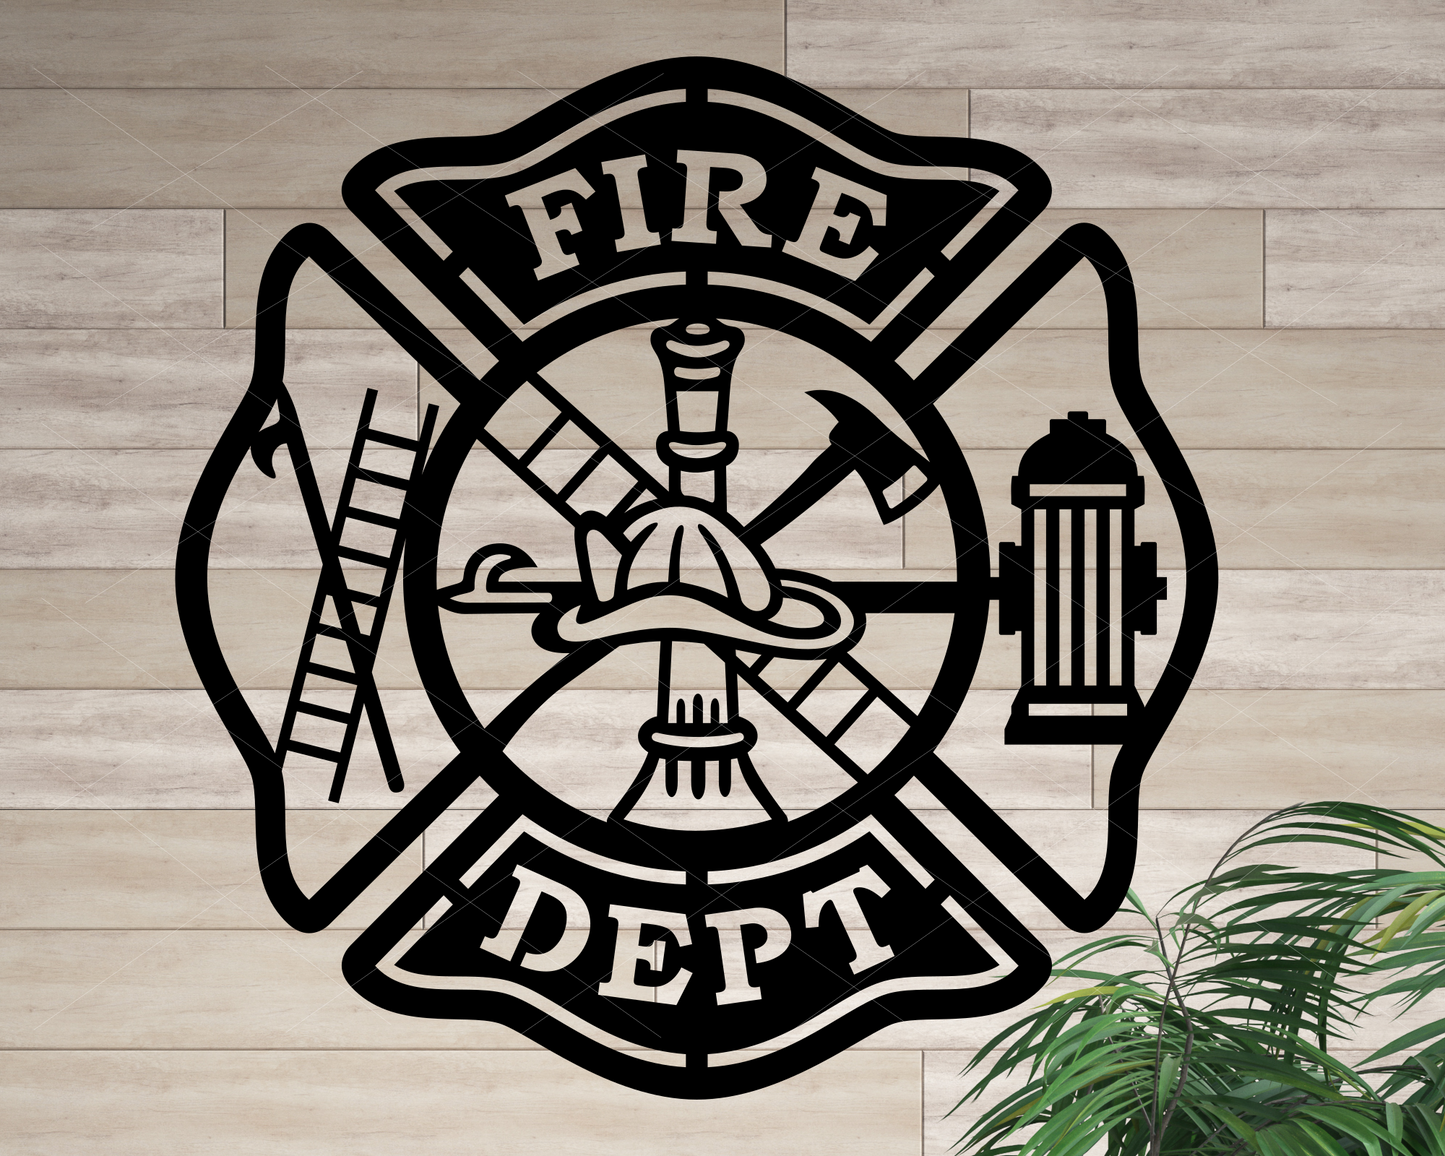 Firefighter/fireman Patch Wall Plaque 